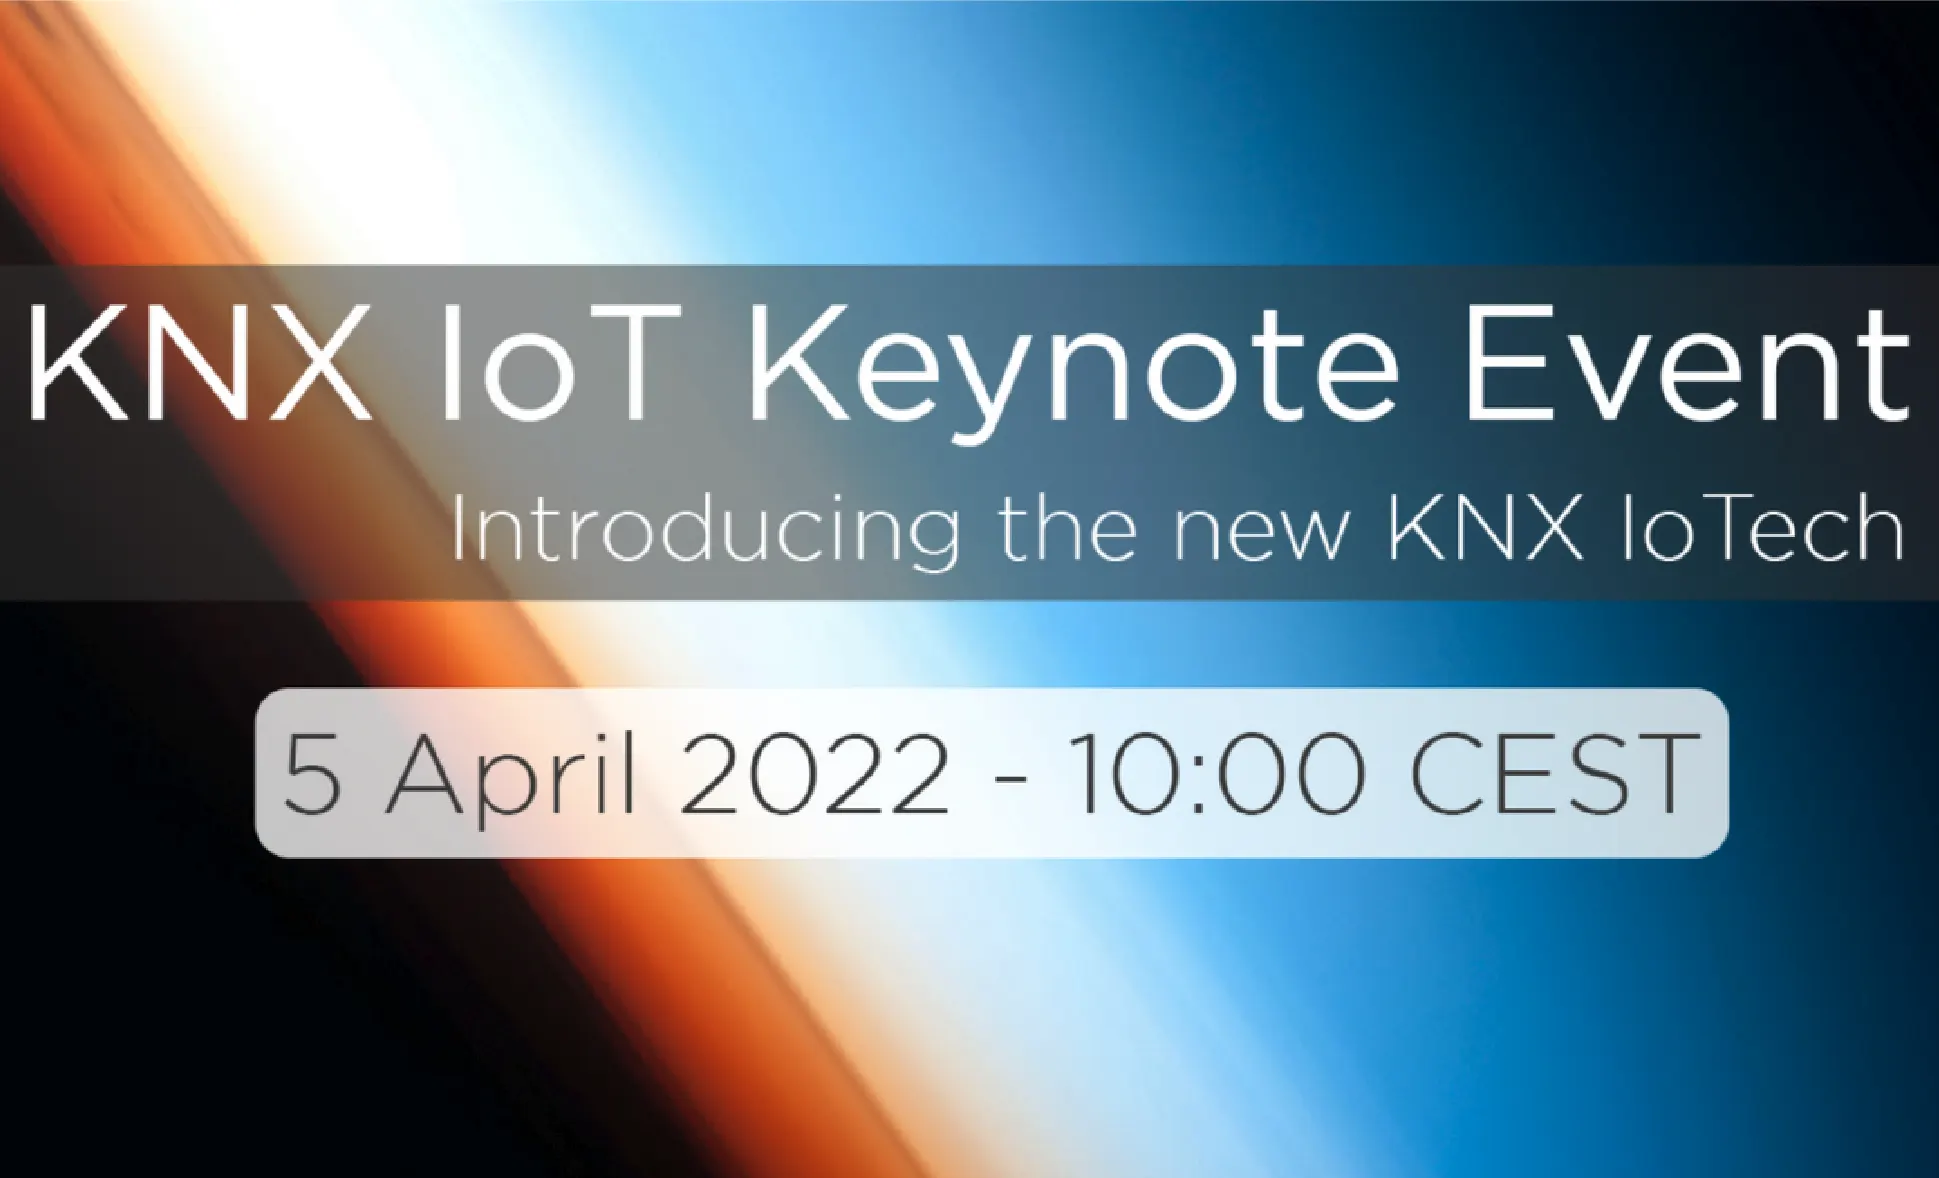 KNX IoT Keynote Event